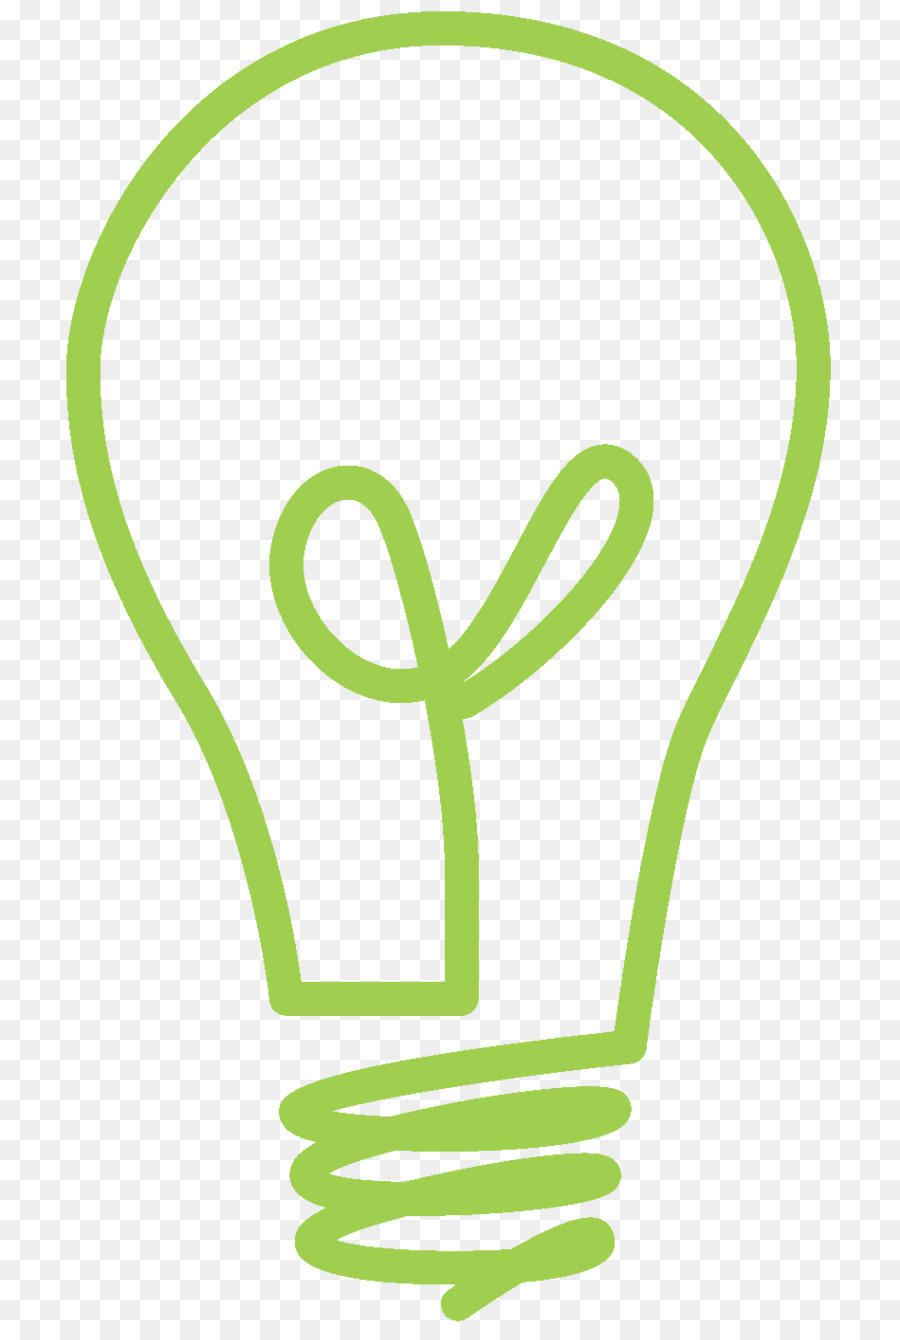 Incandescent light bulb Clip art - lightbulb png download - 949*1401 - Free Transparent  Light png Download.